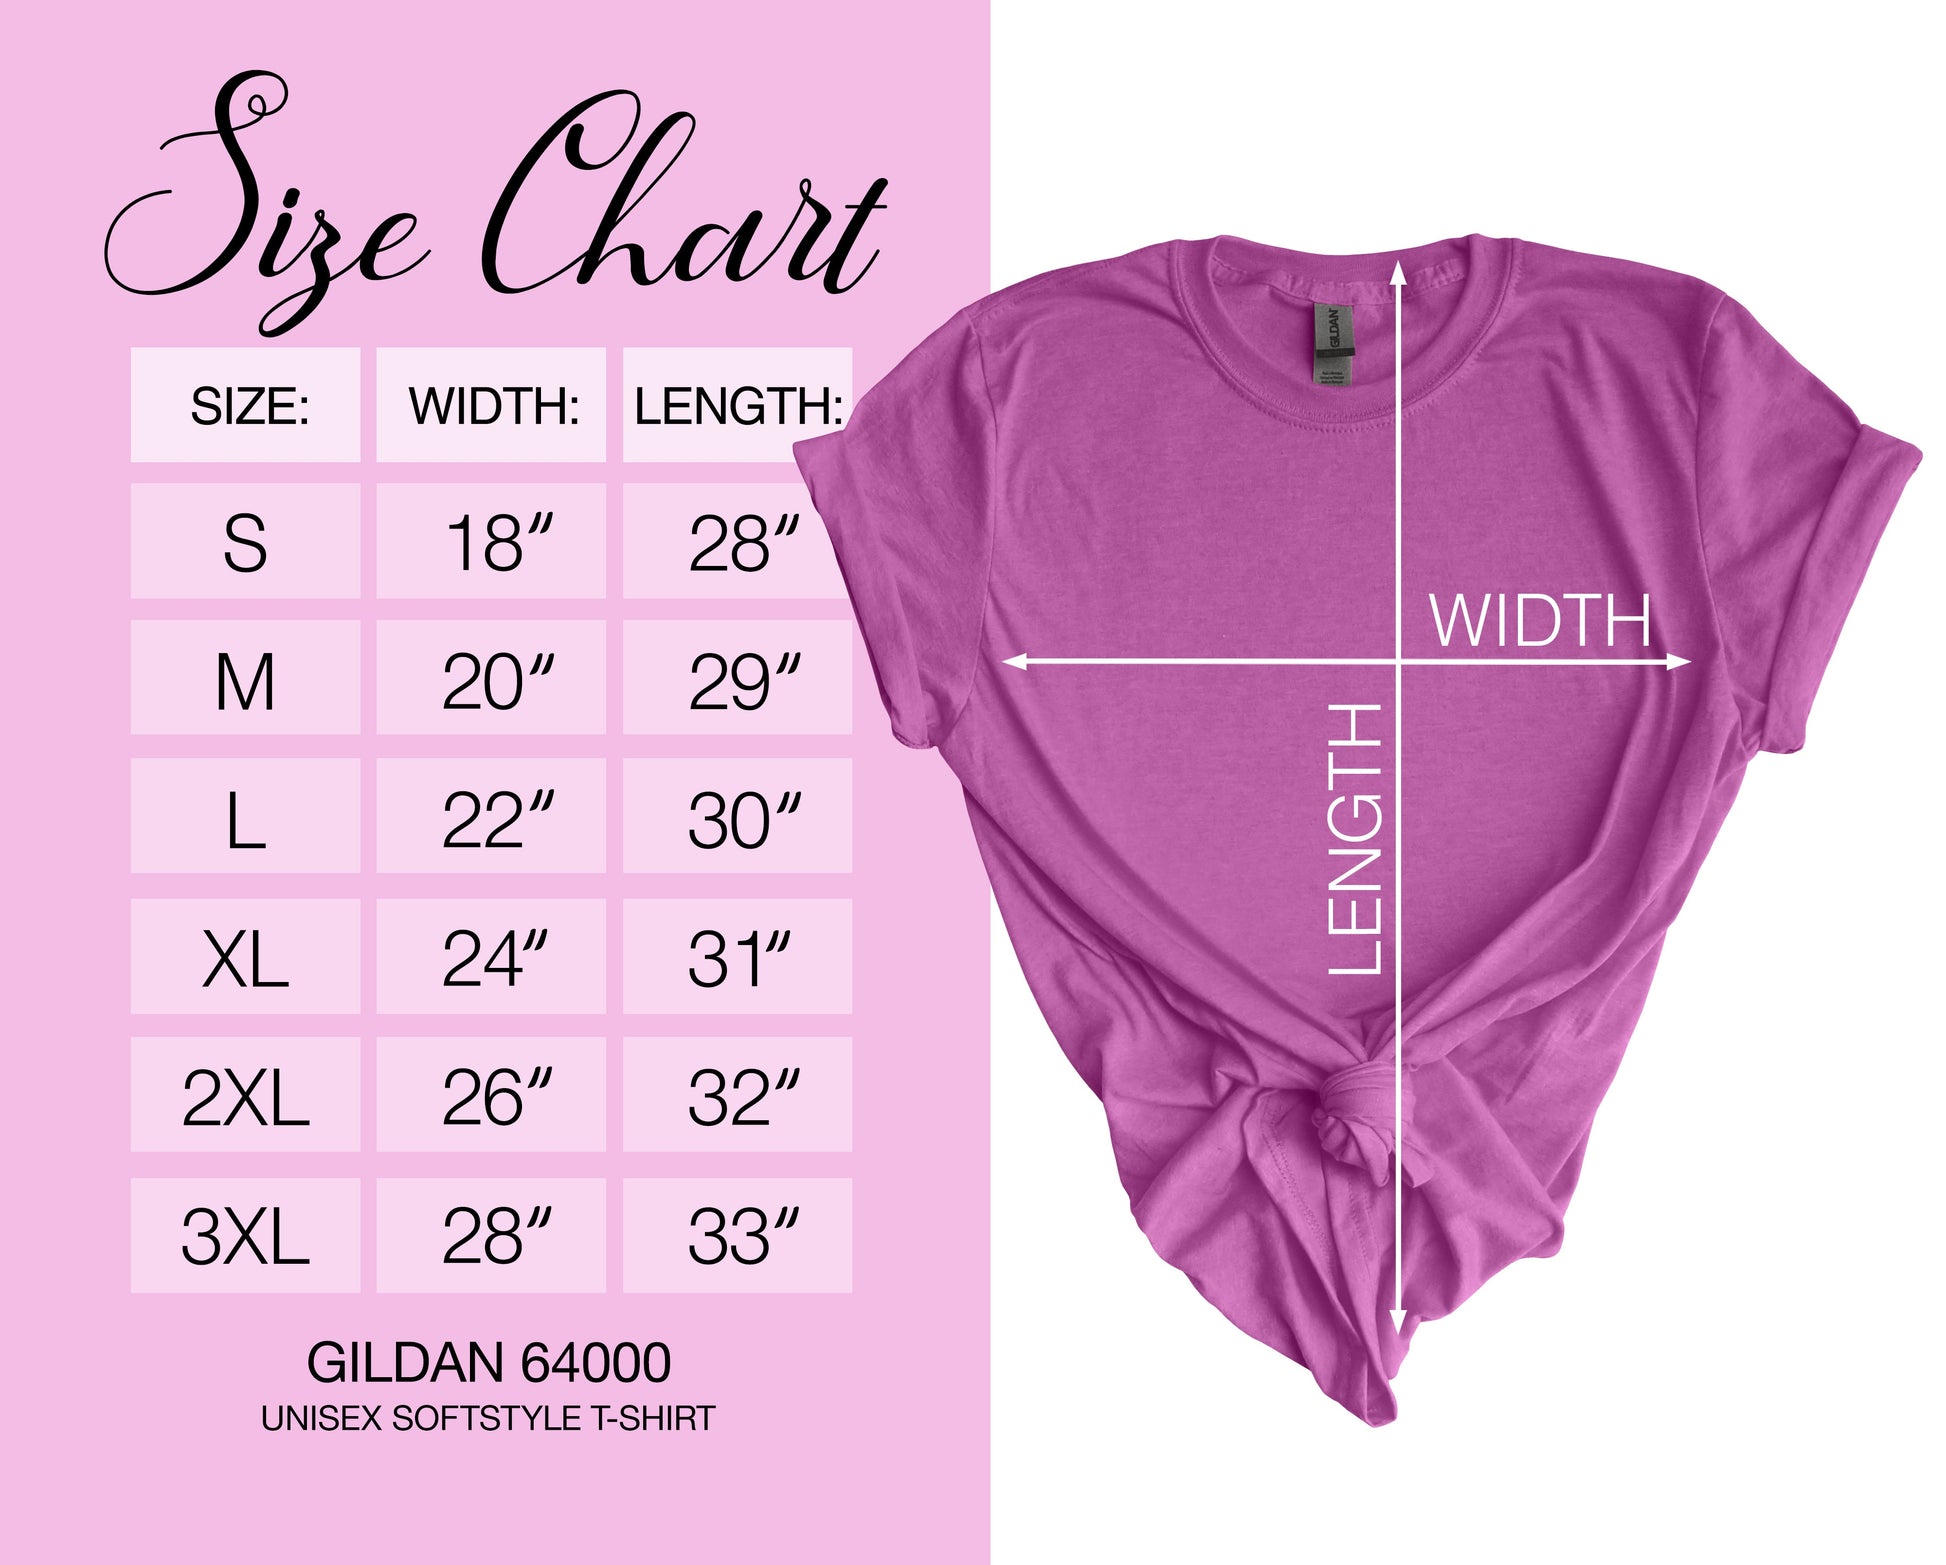 Gildan Softstyle T-Shirt Sizing Chart